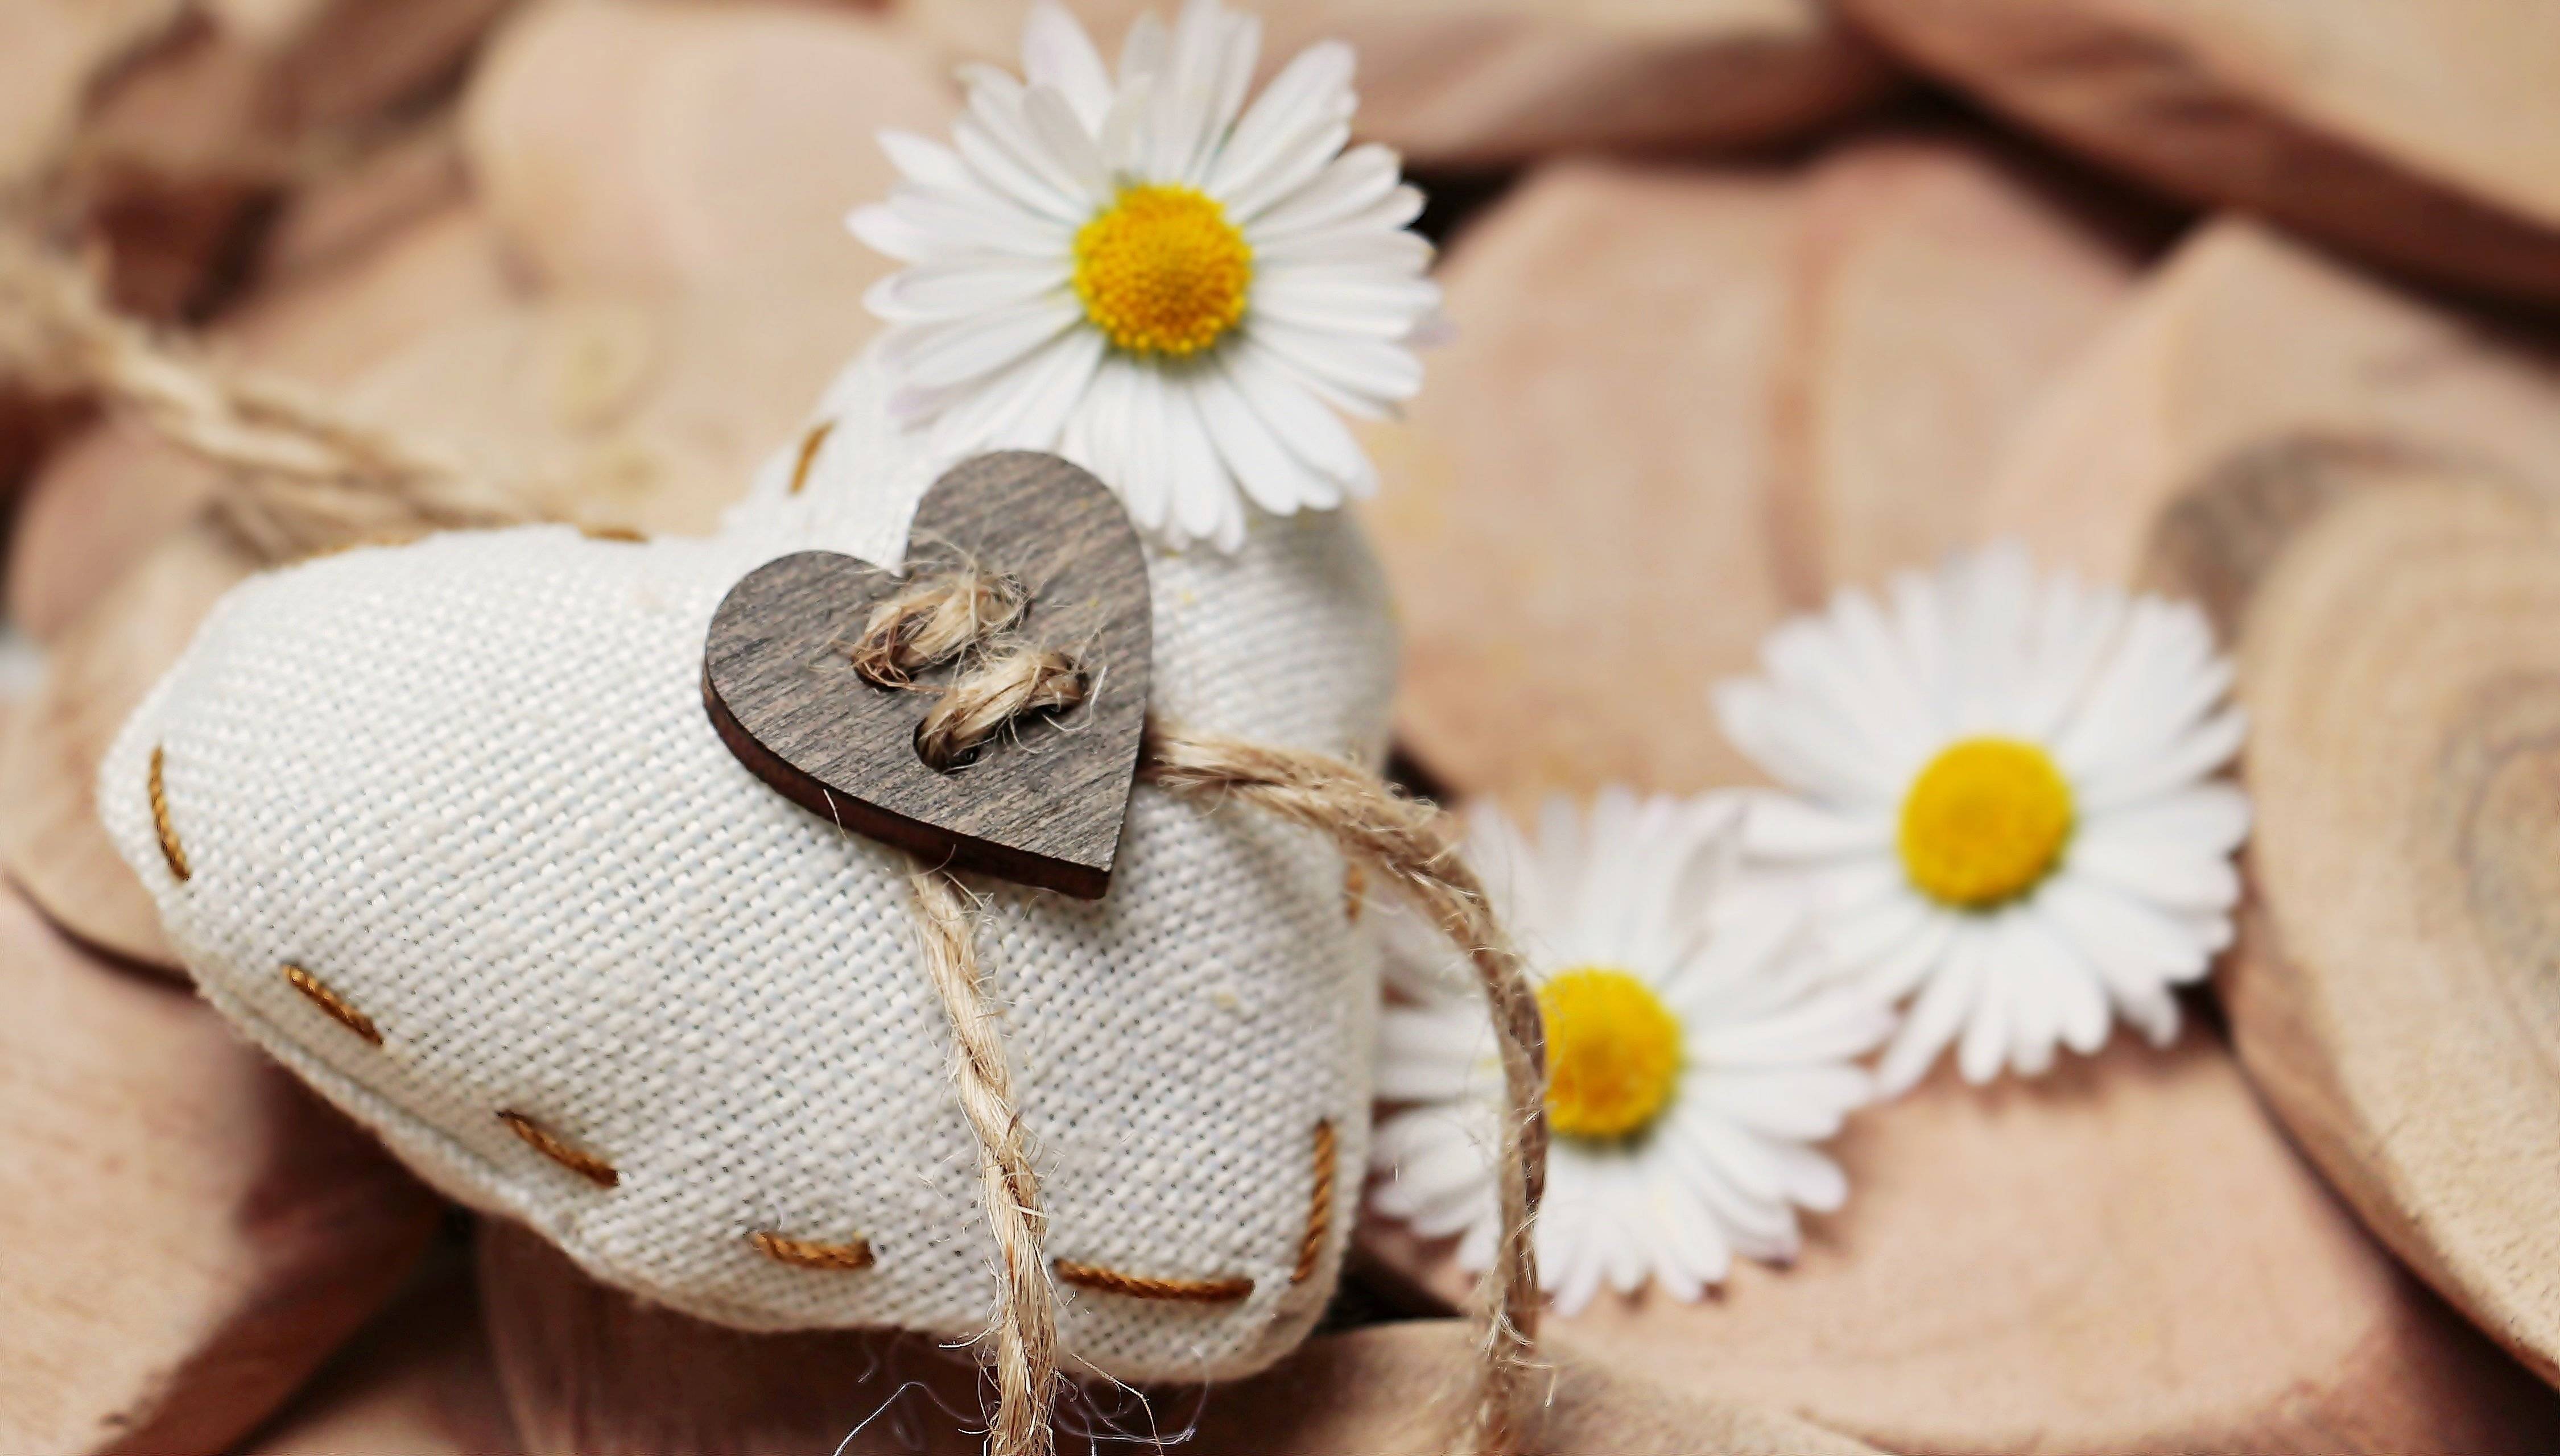 Комнатные цветы для женского счастья и любви: 20 разновидностей с фото